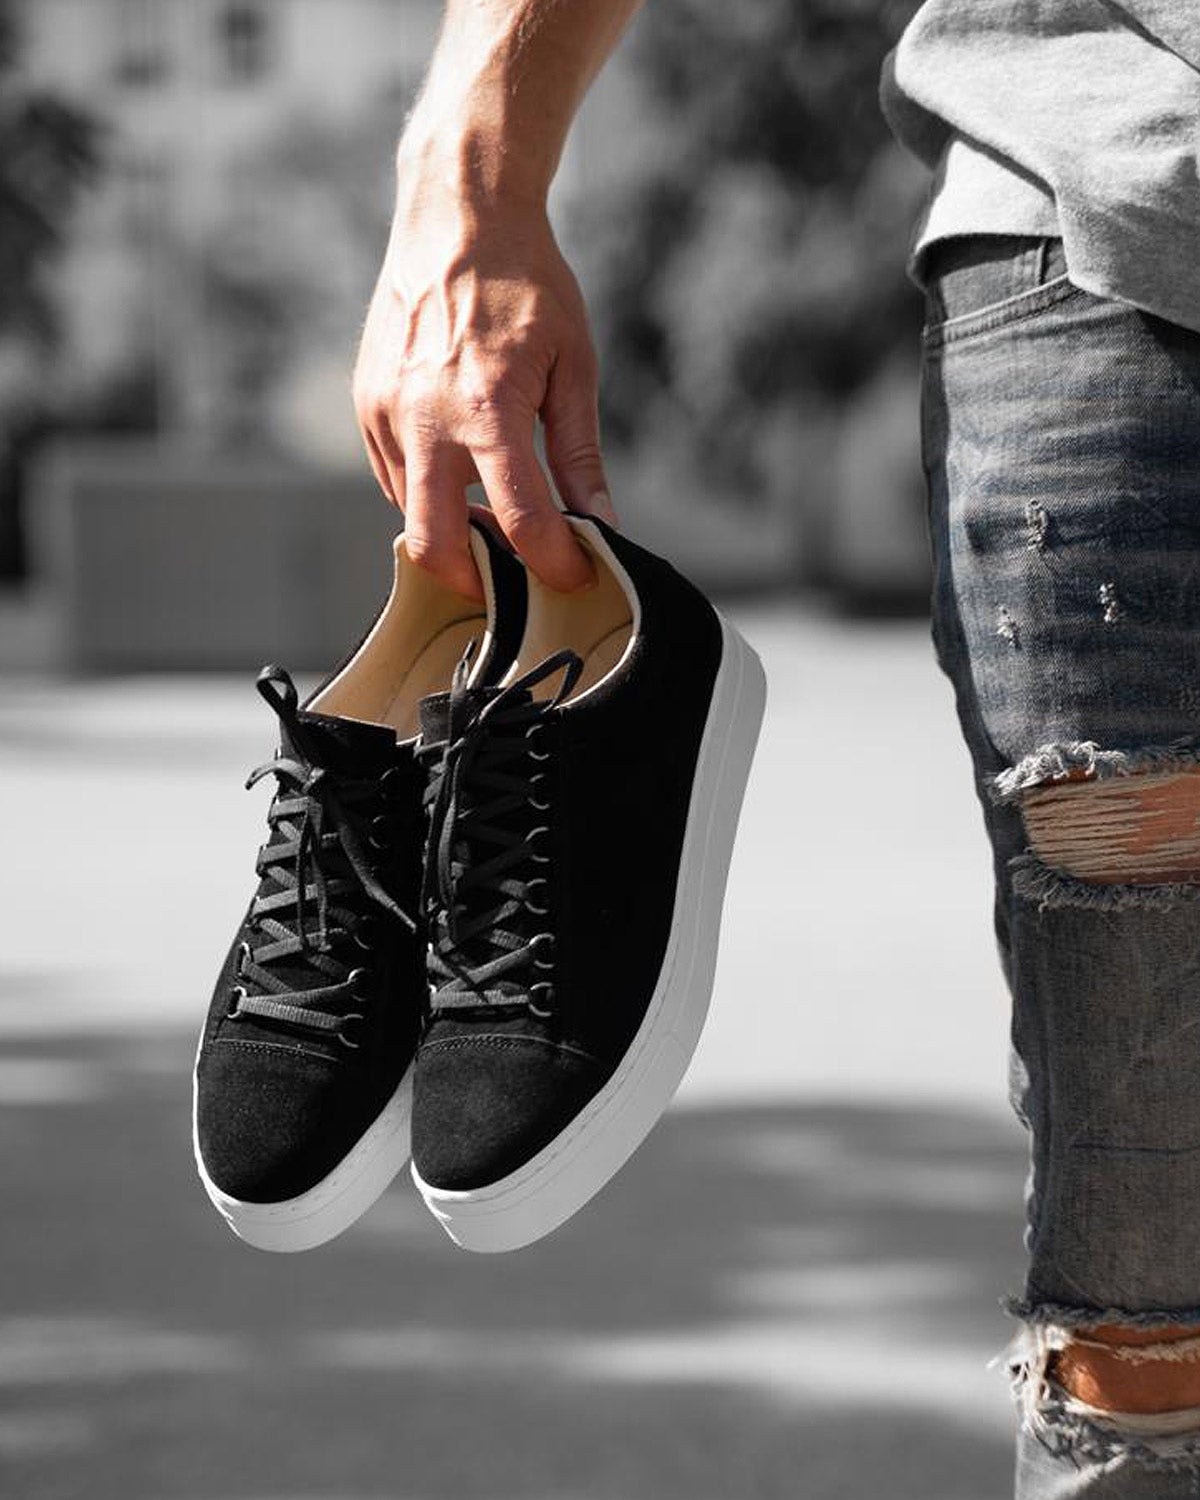 Chaussures type basket à lacets aspect cuir noir et semelle blanche pour homme